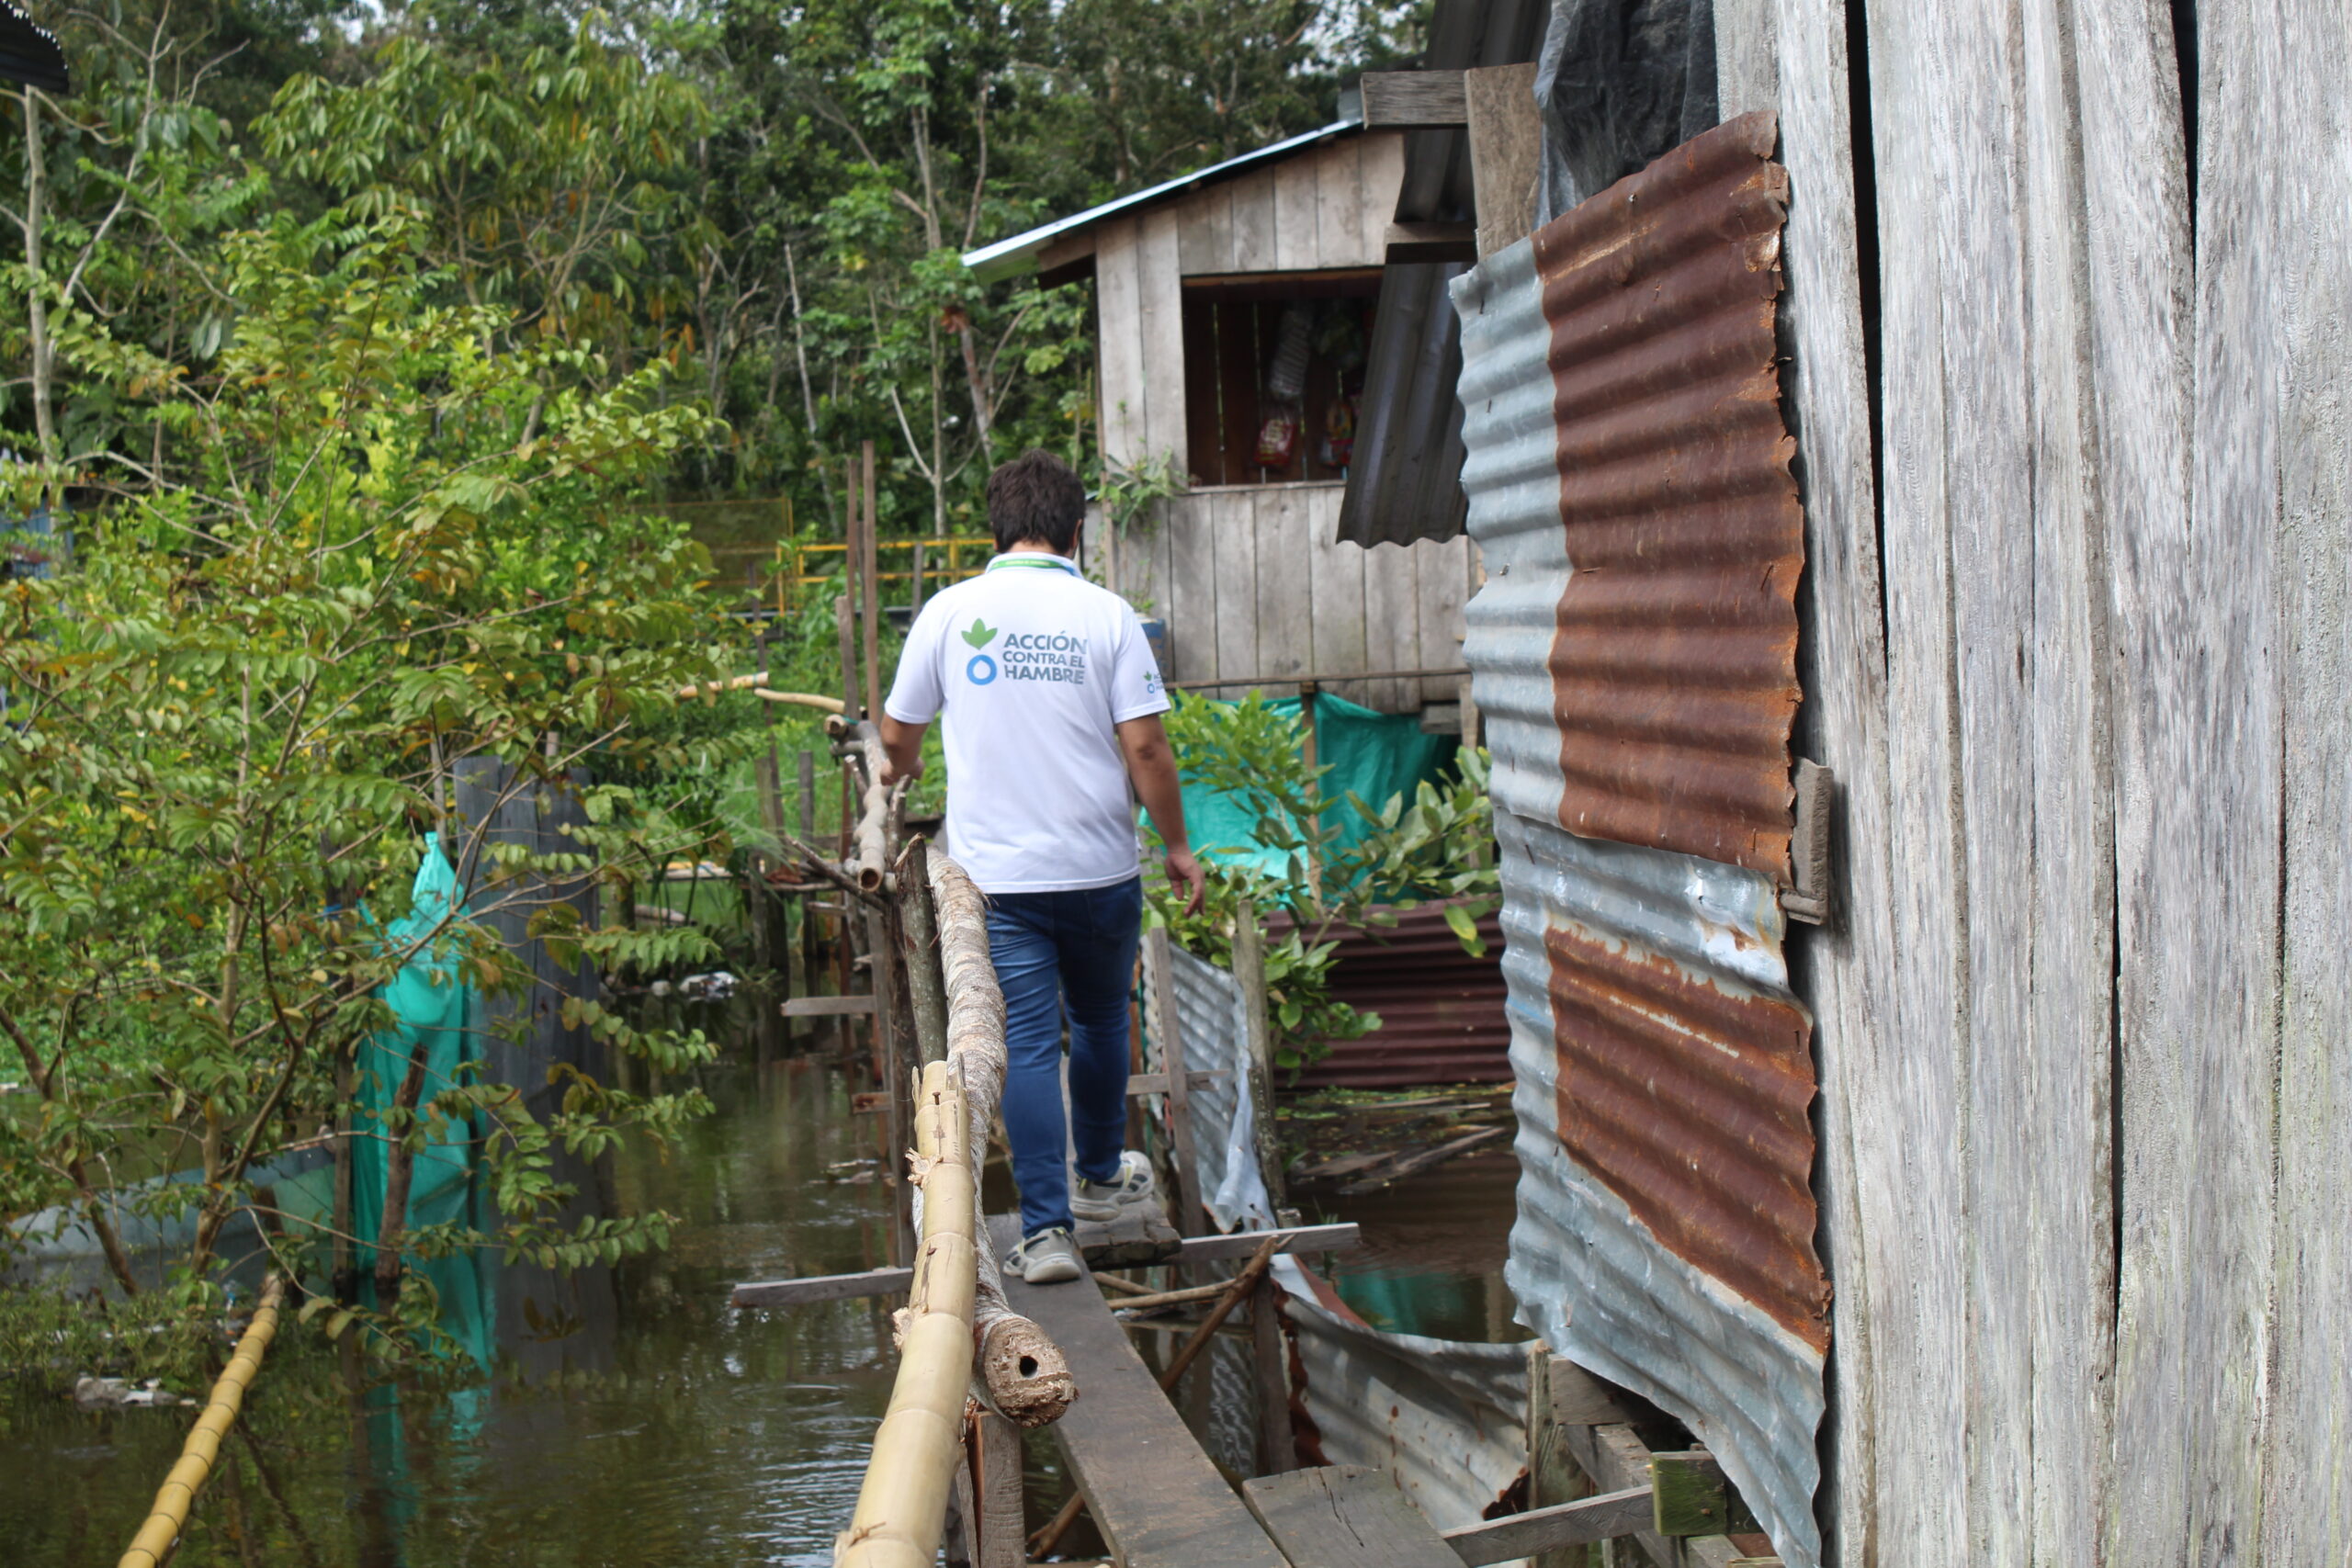 IMG 3666 scaled - Amazonía: naturaleza en riesgo y desafíos humanitarios